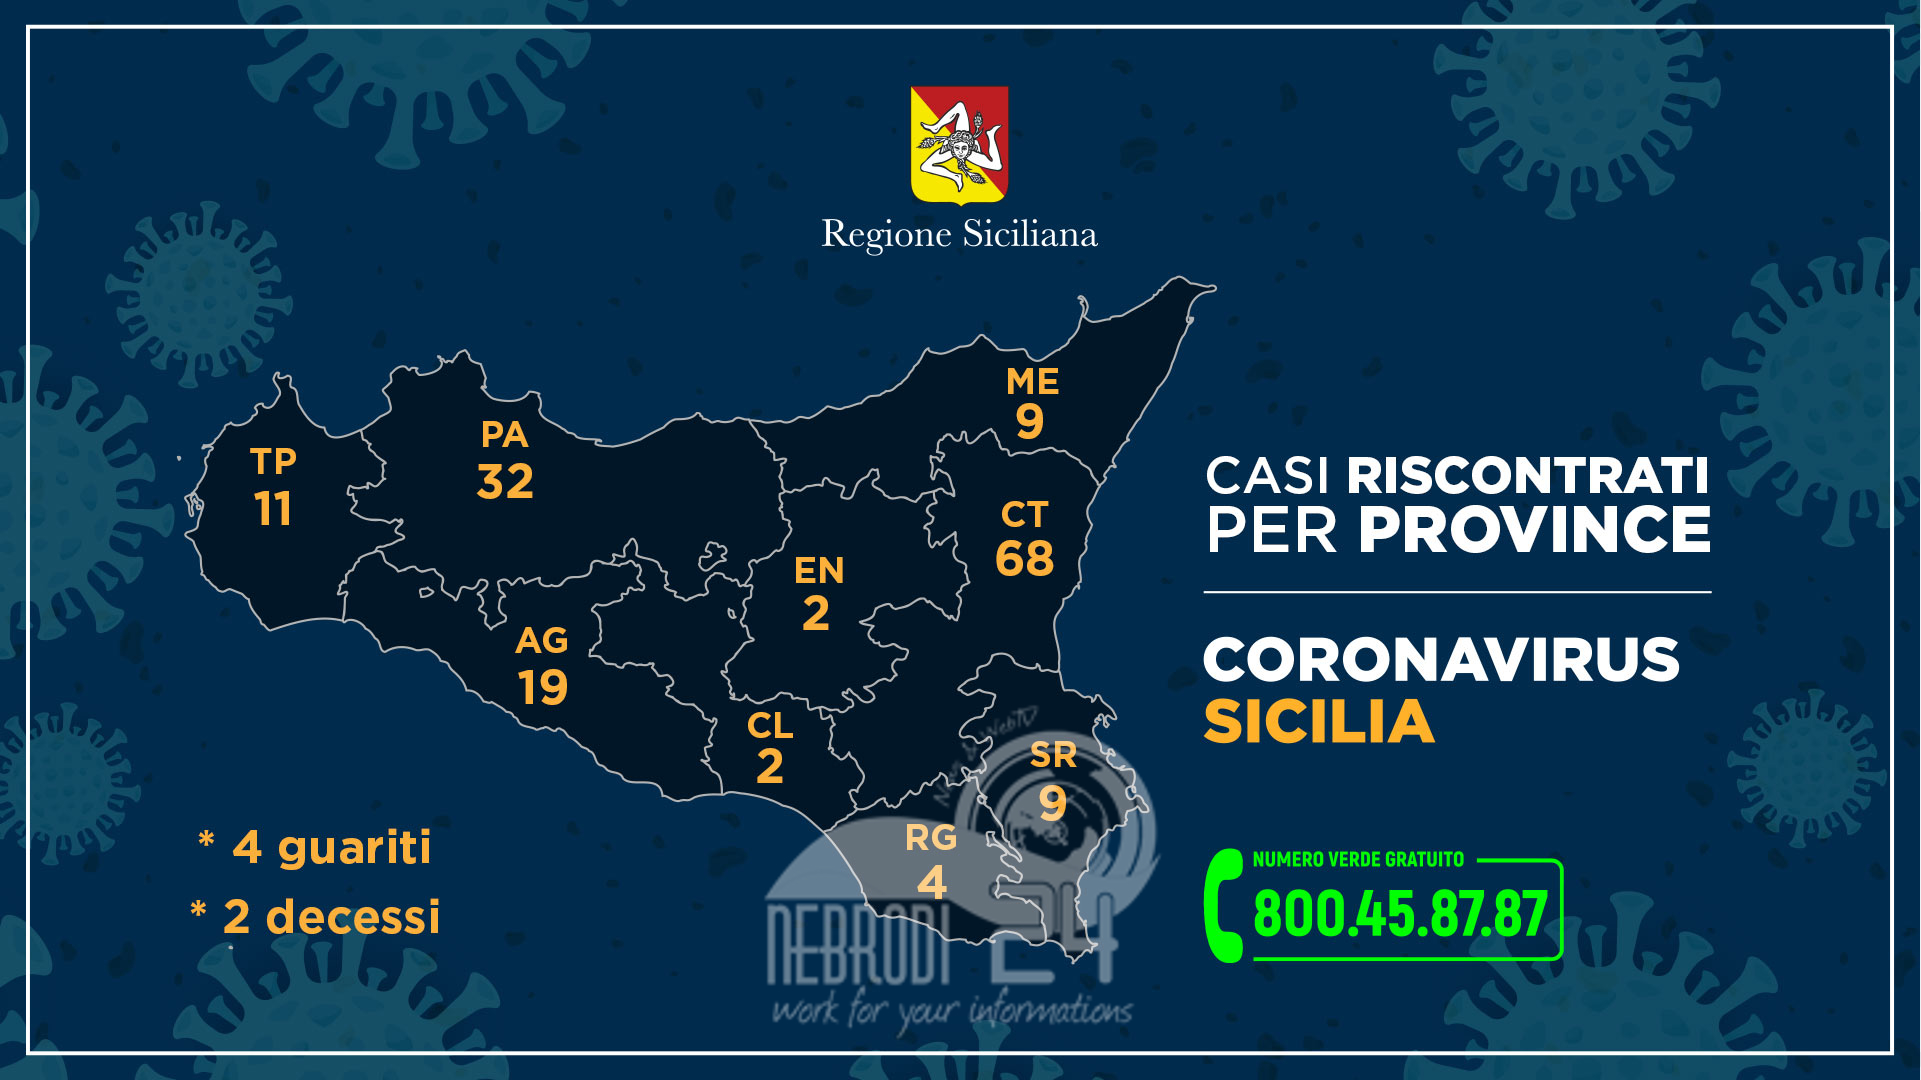 Coronavirus: l’aggiornamento in Sicilia, 156 positivi e 4 guariti. (26 più di ieri)